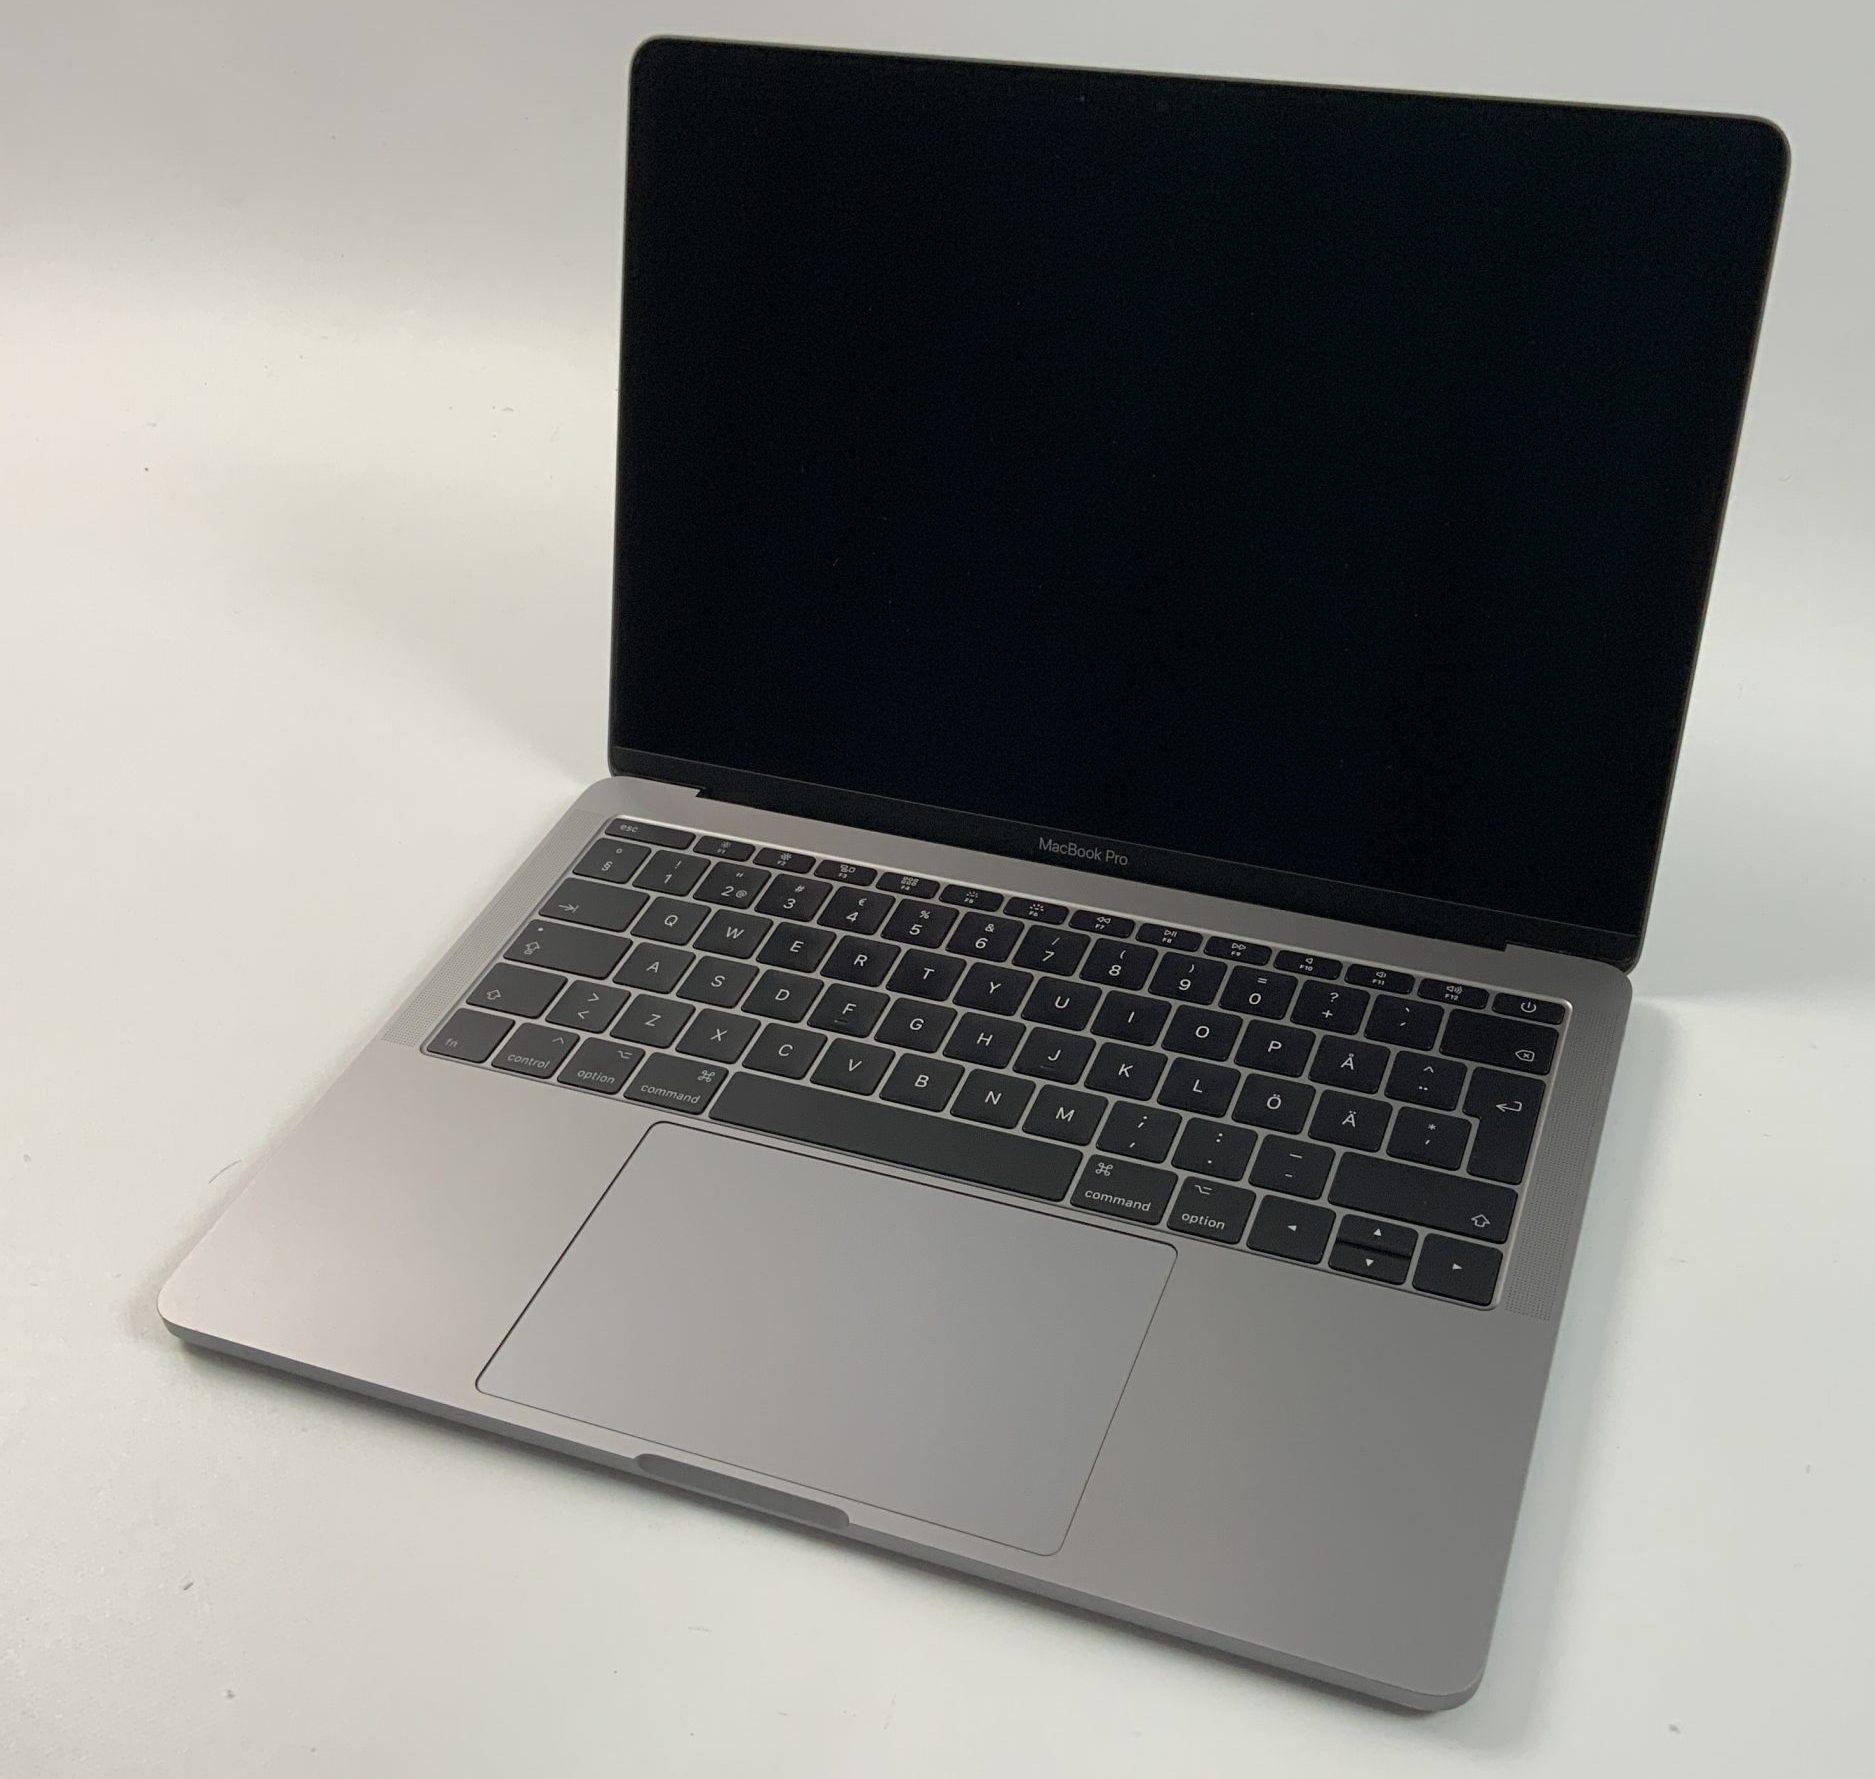 MacBook Pro 13" 2TBT Mid 2017 (Intel Core i5 2.3 GHz 8 GB RAM 256 GB SSD), Space Gray, Intel Core i5 2.3 GHz, 8 GB RAM, 256 GB SSD, immagine 1